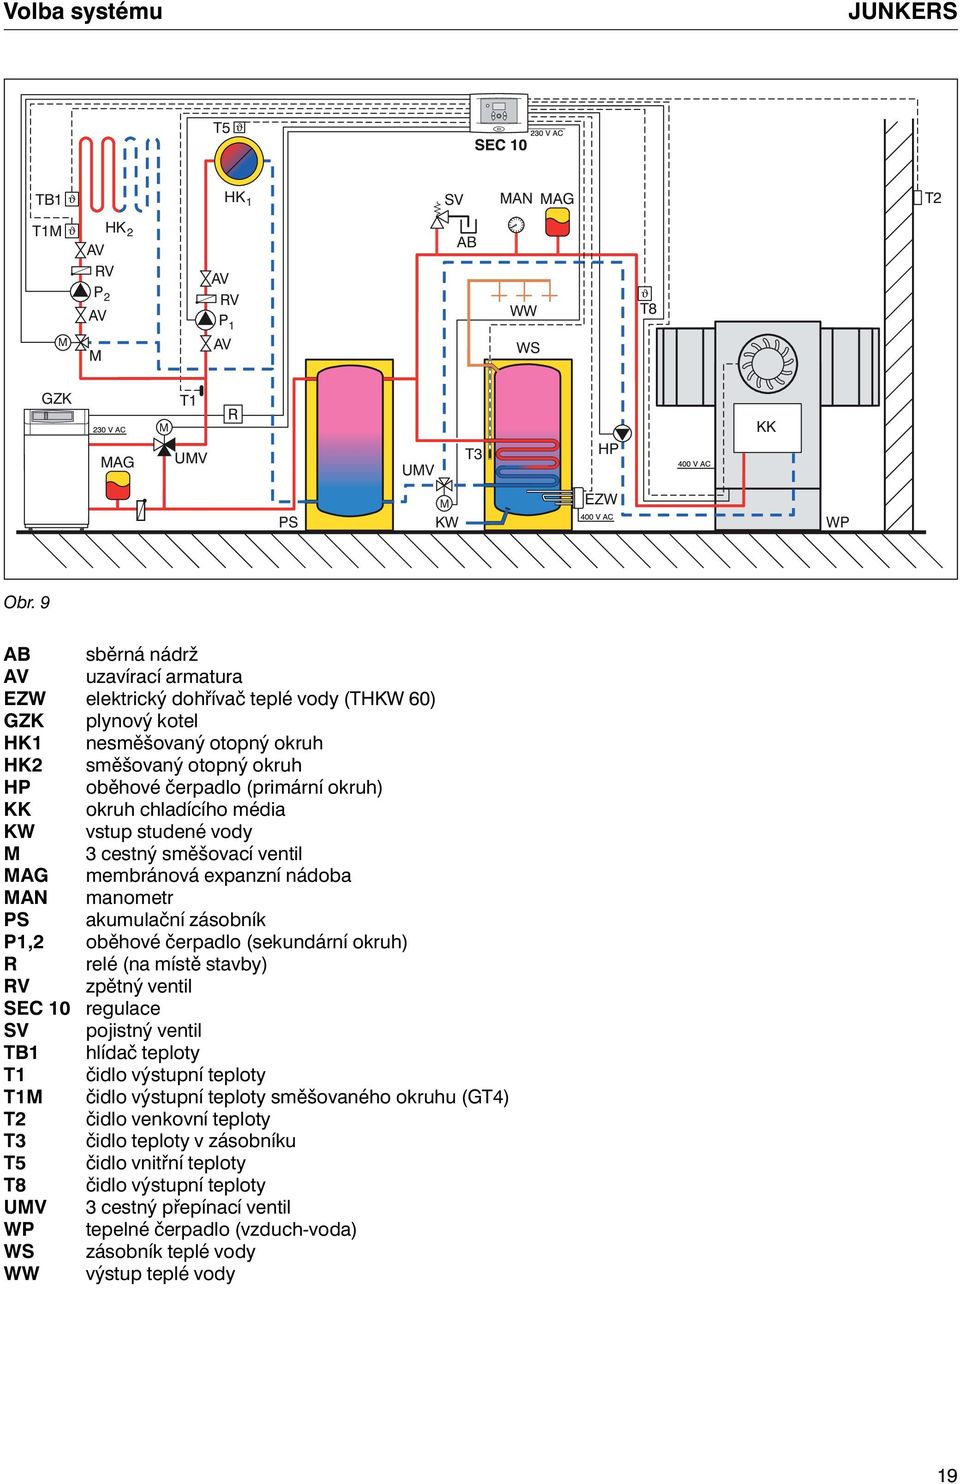 okruh chladícího média KW vstup studené vody M 3 cestný směšovací ventil MAG membránová expanzní nádoba MAN manometr PS akumulační zásobník P1,2 oběhové čerpadlo (sekundární okruh) R relé (na místě